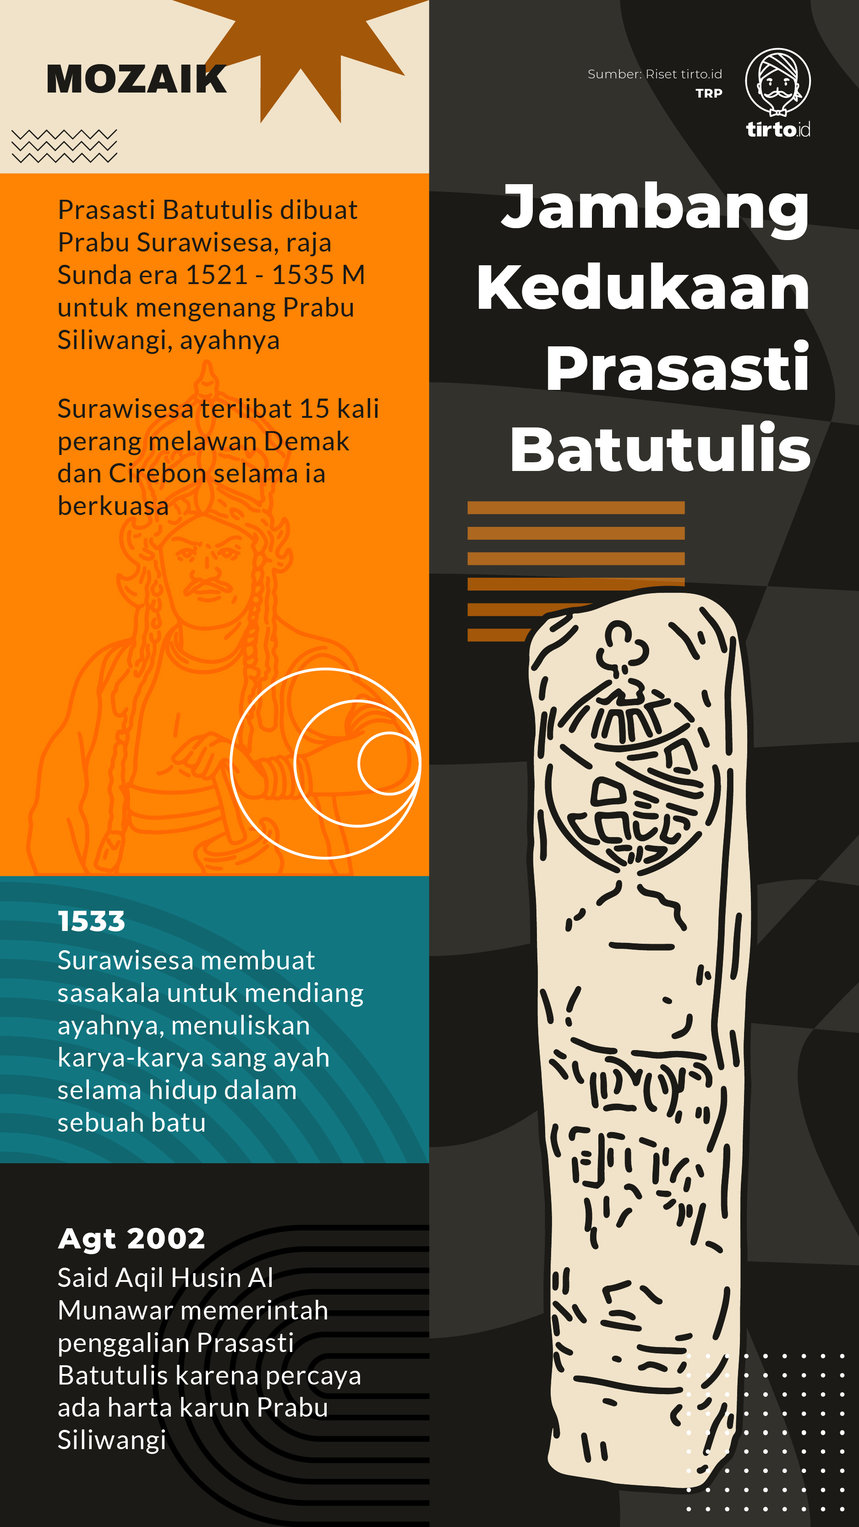 Infografik Mozaik Portugis dan Kisruh Politik di Jawa